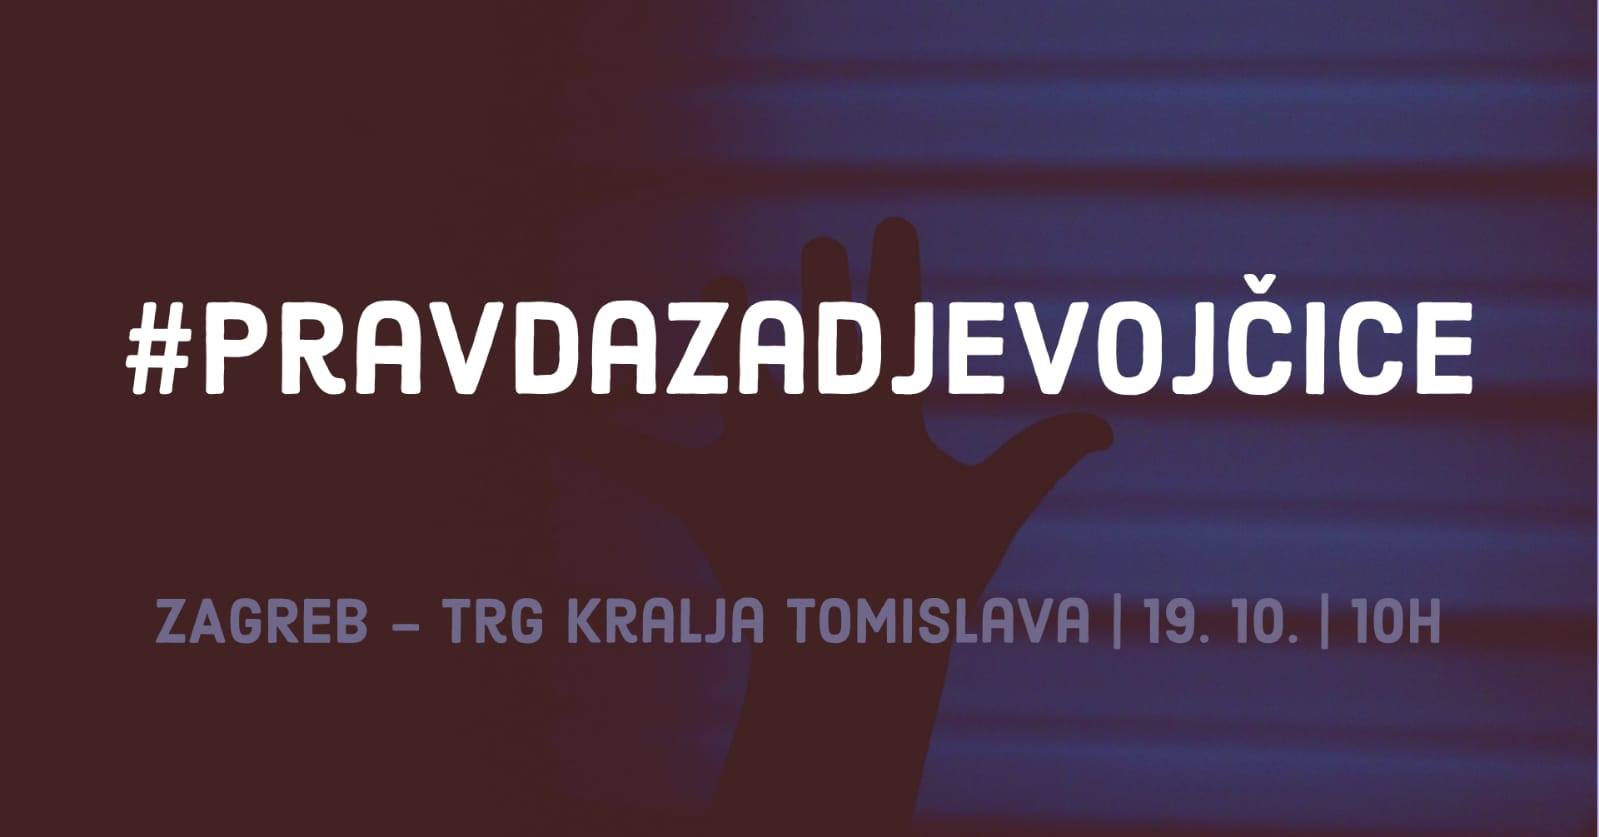 Prosvjed “Pravda za djevojčice!” – Zagreb